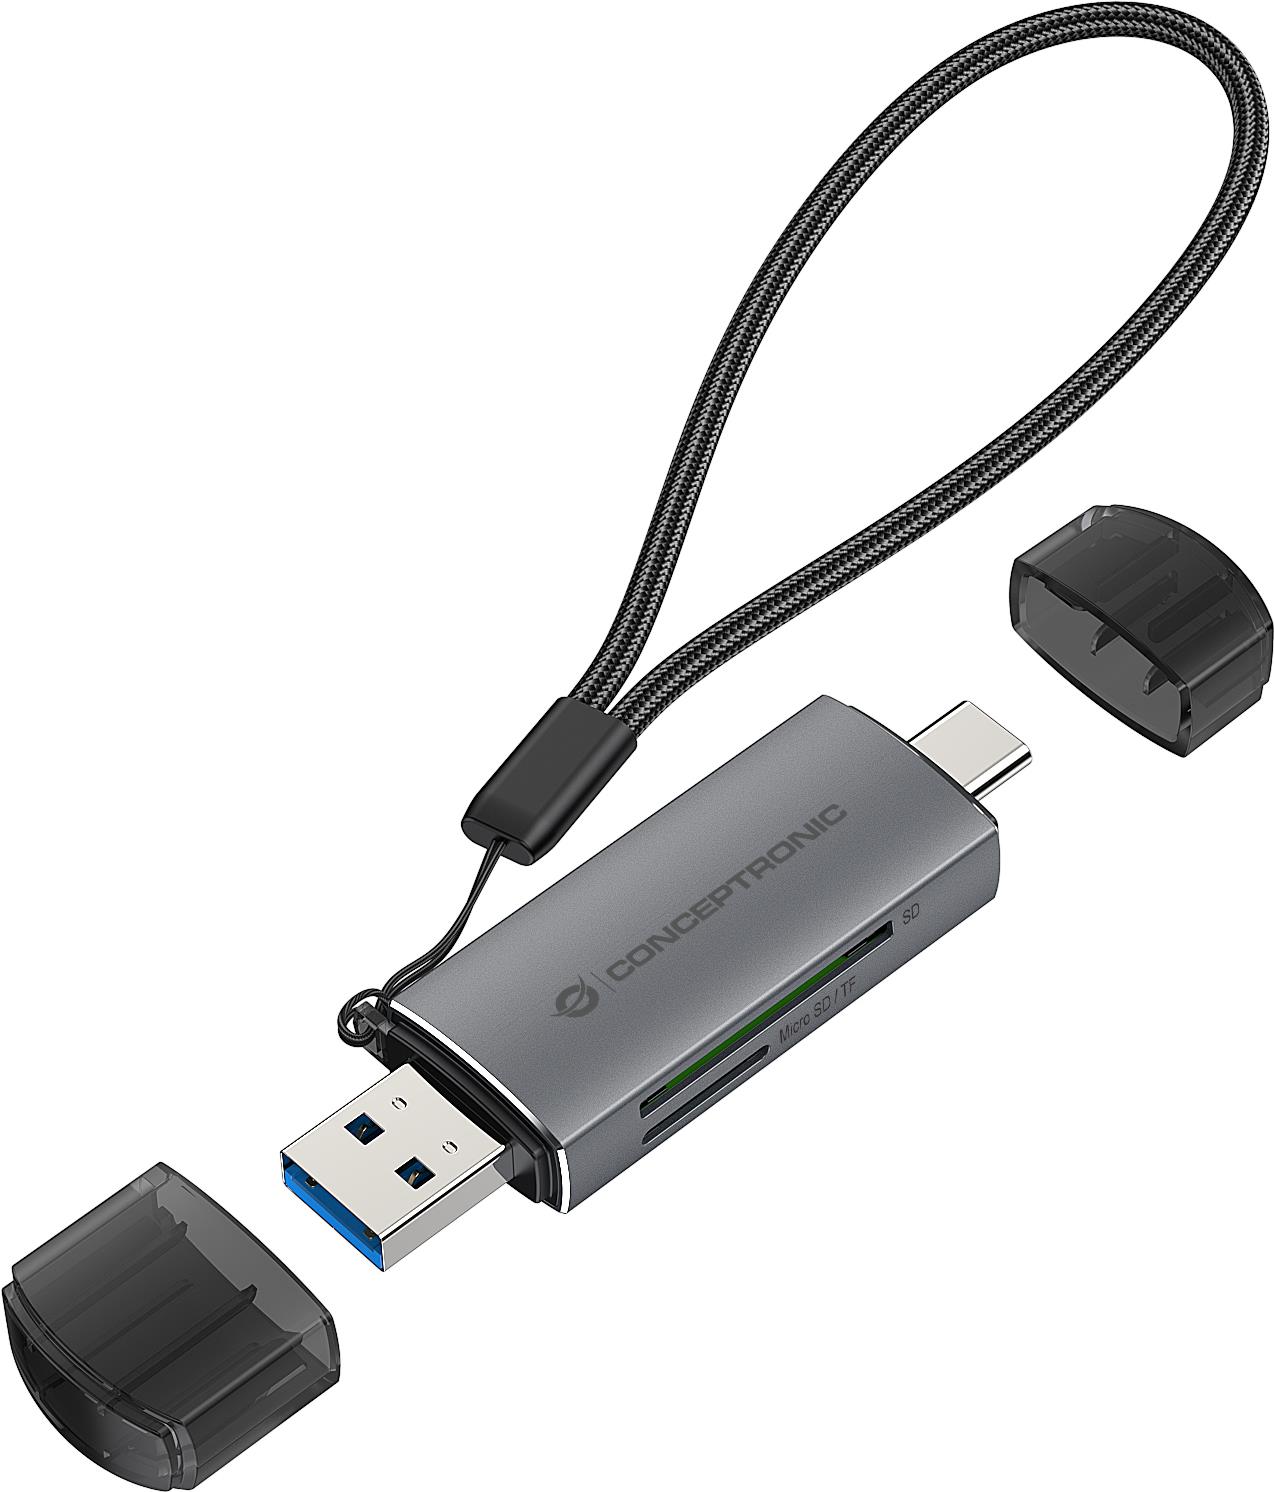 Conceptronic BIAN05G 2-in-1 Dual Plug Kartenleser USB 3.0, SD/MicroSD 3.0, UHS-I. Kompatible Speicherkarten: MicroSD (TransFlash), SD, SDHC, SDXC, Produktfarbe: Grau, Datenübertragungsrate: 5000 Mbit/s. Schnittstelle: USB 3.2 Gen 1 (3.1 Gen 1) Type-A/Type-C. Nachhaltigkeitszertifikate: CE, REACH, RoHS. Breite: 21,3 mm, Tiefe: 11,5 mm, Höhe: 78 mm. Menge pro Packung: 1 Stück(e), Verpackungsbreite: 75 mm, Verpackungstiefe: 25 mm (BIAN05G)